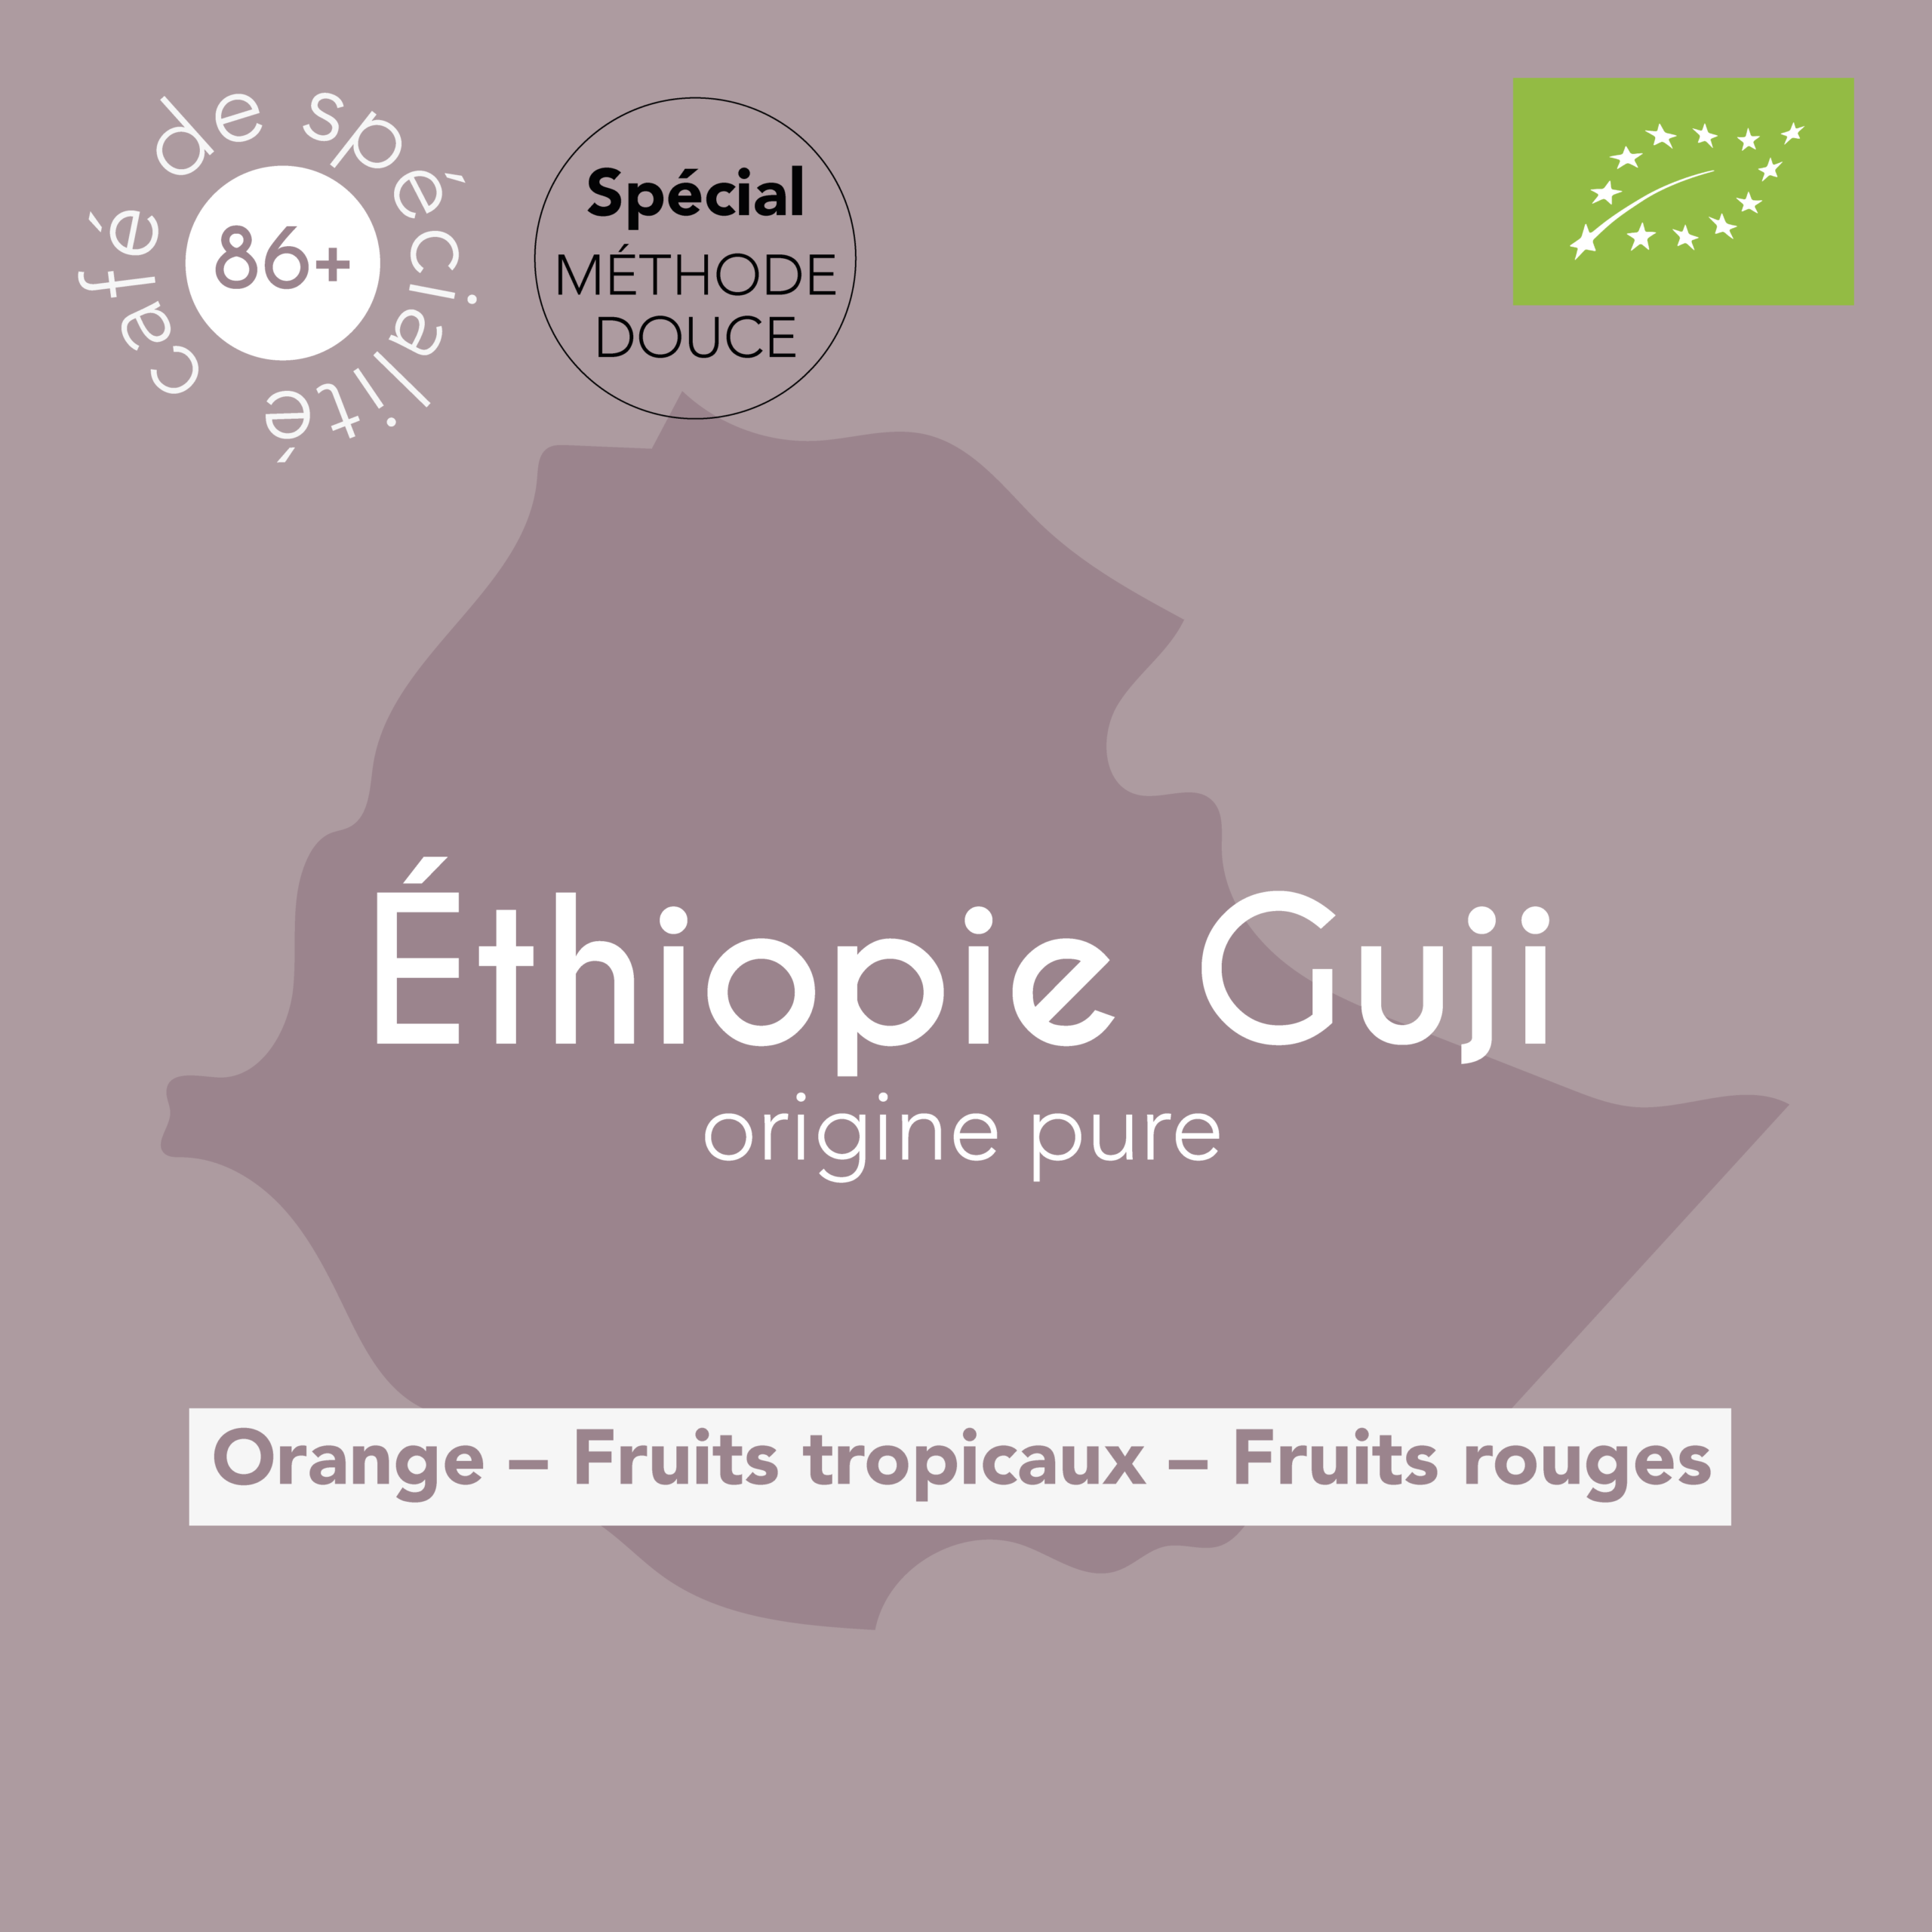 Présentation du café spécial méthode douce, Ethiopie Guji